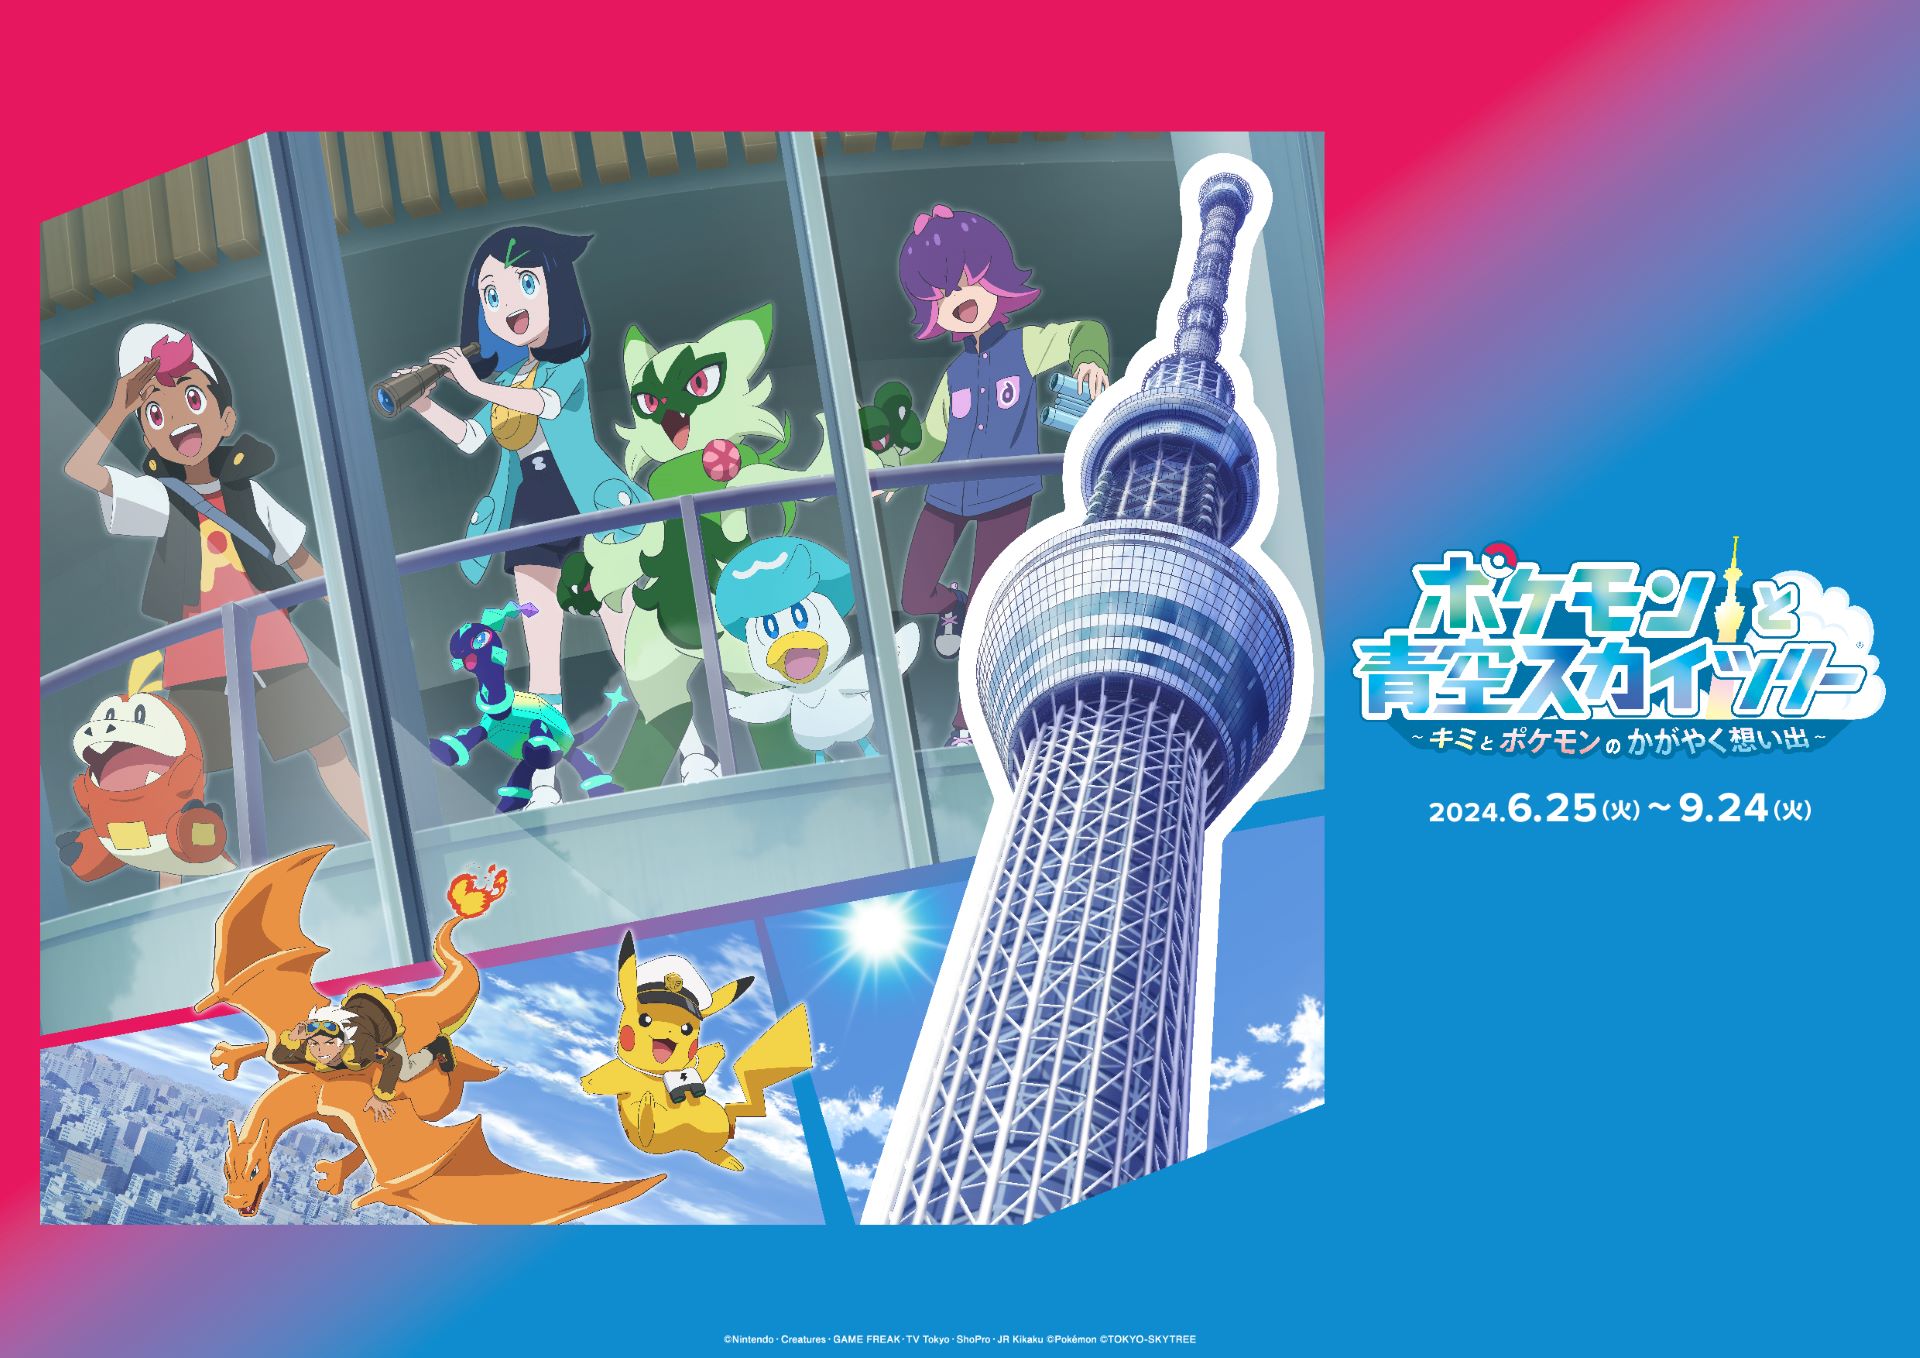 ภาษาอังกฤษ - TOKYO SKYTREE, TV Anime Pokemon to Hold 1st Joint Event -- "Pokemon Horizons: The Series 'POKEMON in TOKYO SKYTREE'" from June 25 to September 24, 2024